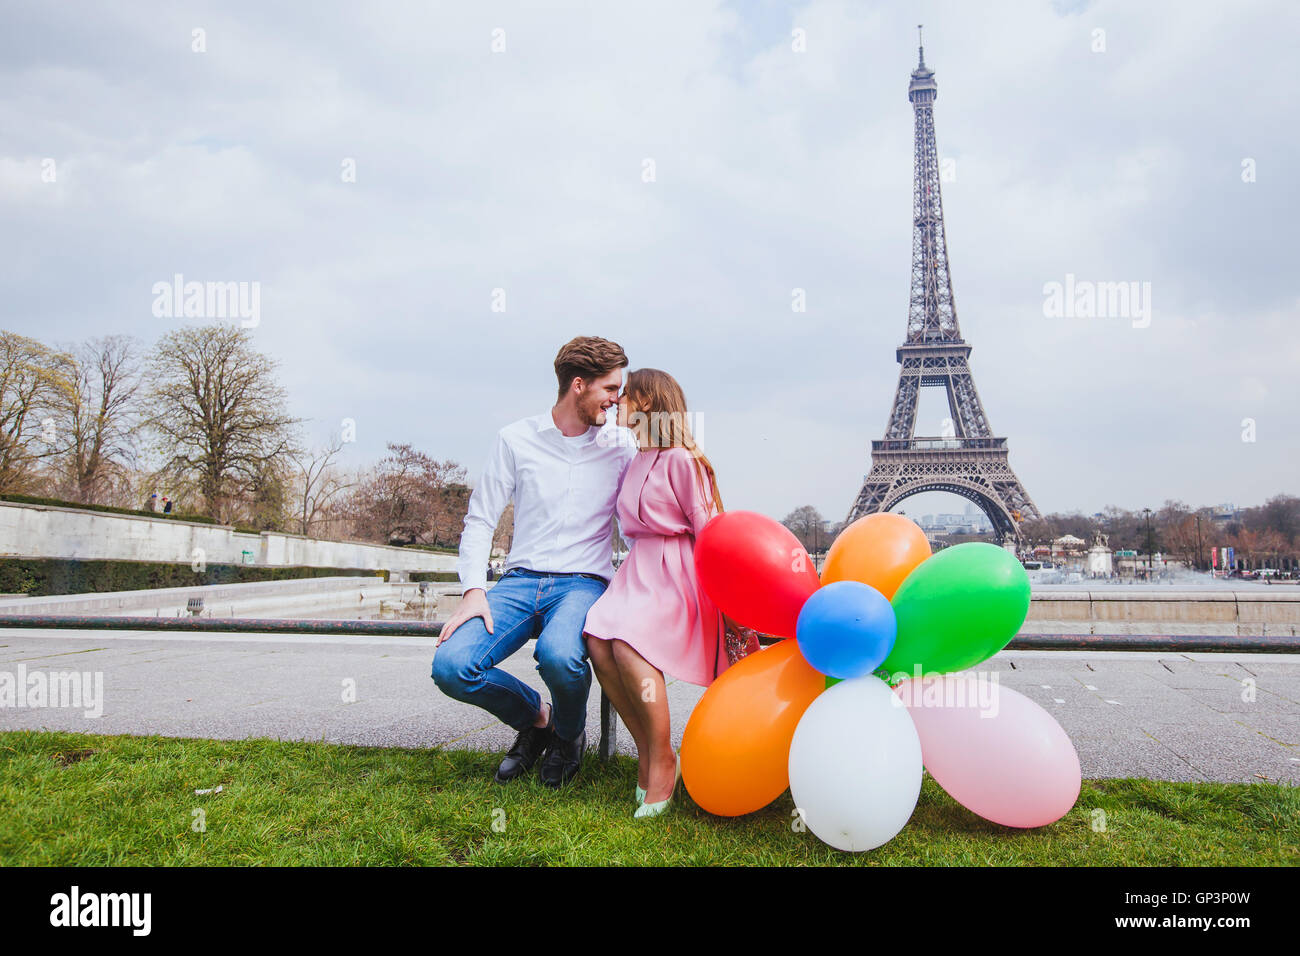 Séance photo, couple heureux avec des ballons posant près de la tour Eiffel à Paris Banque D'Images